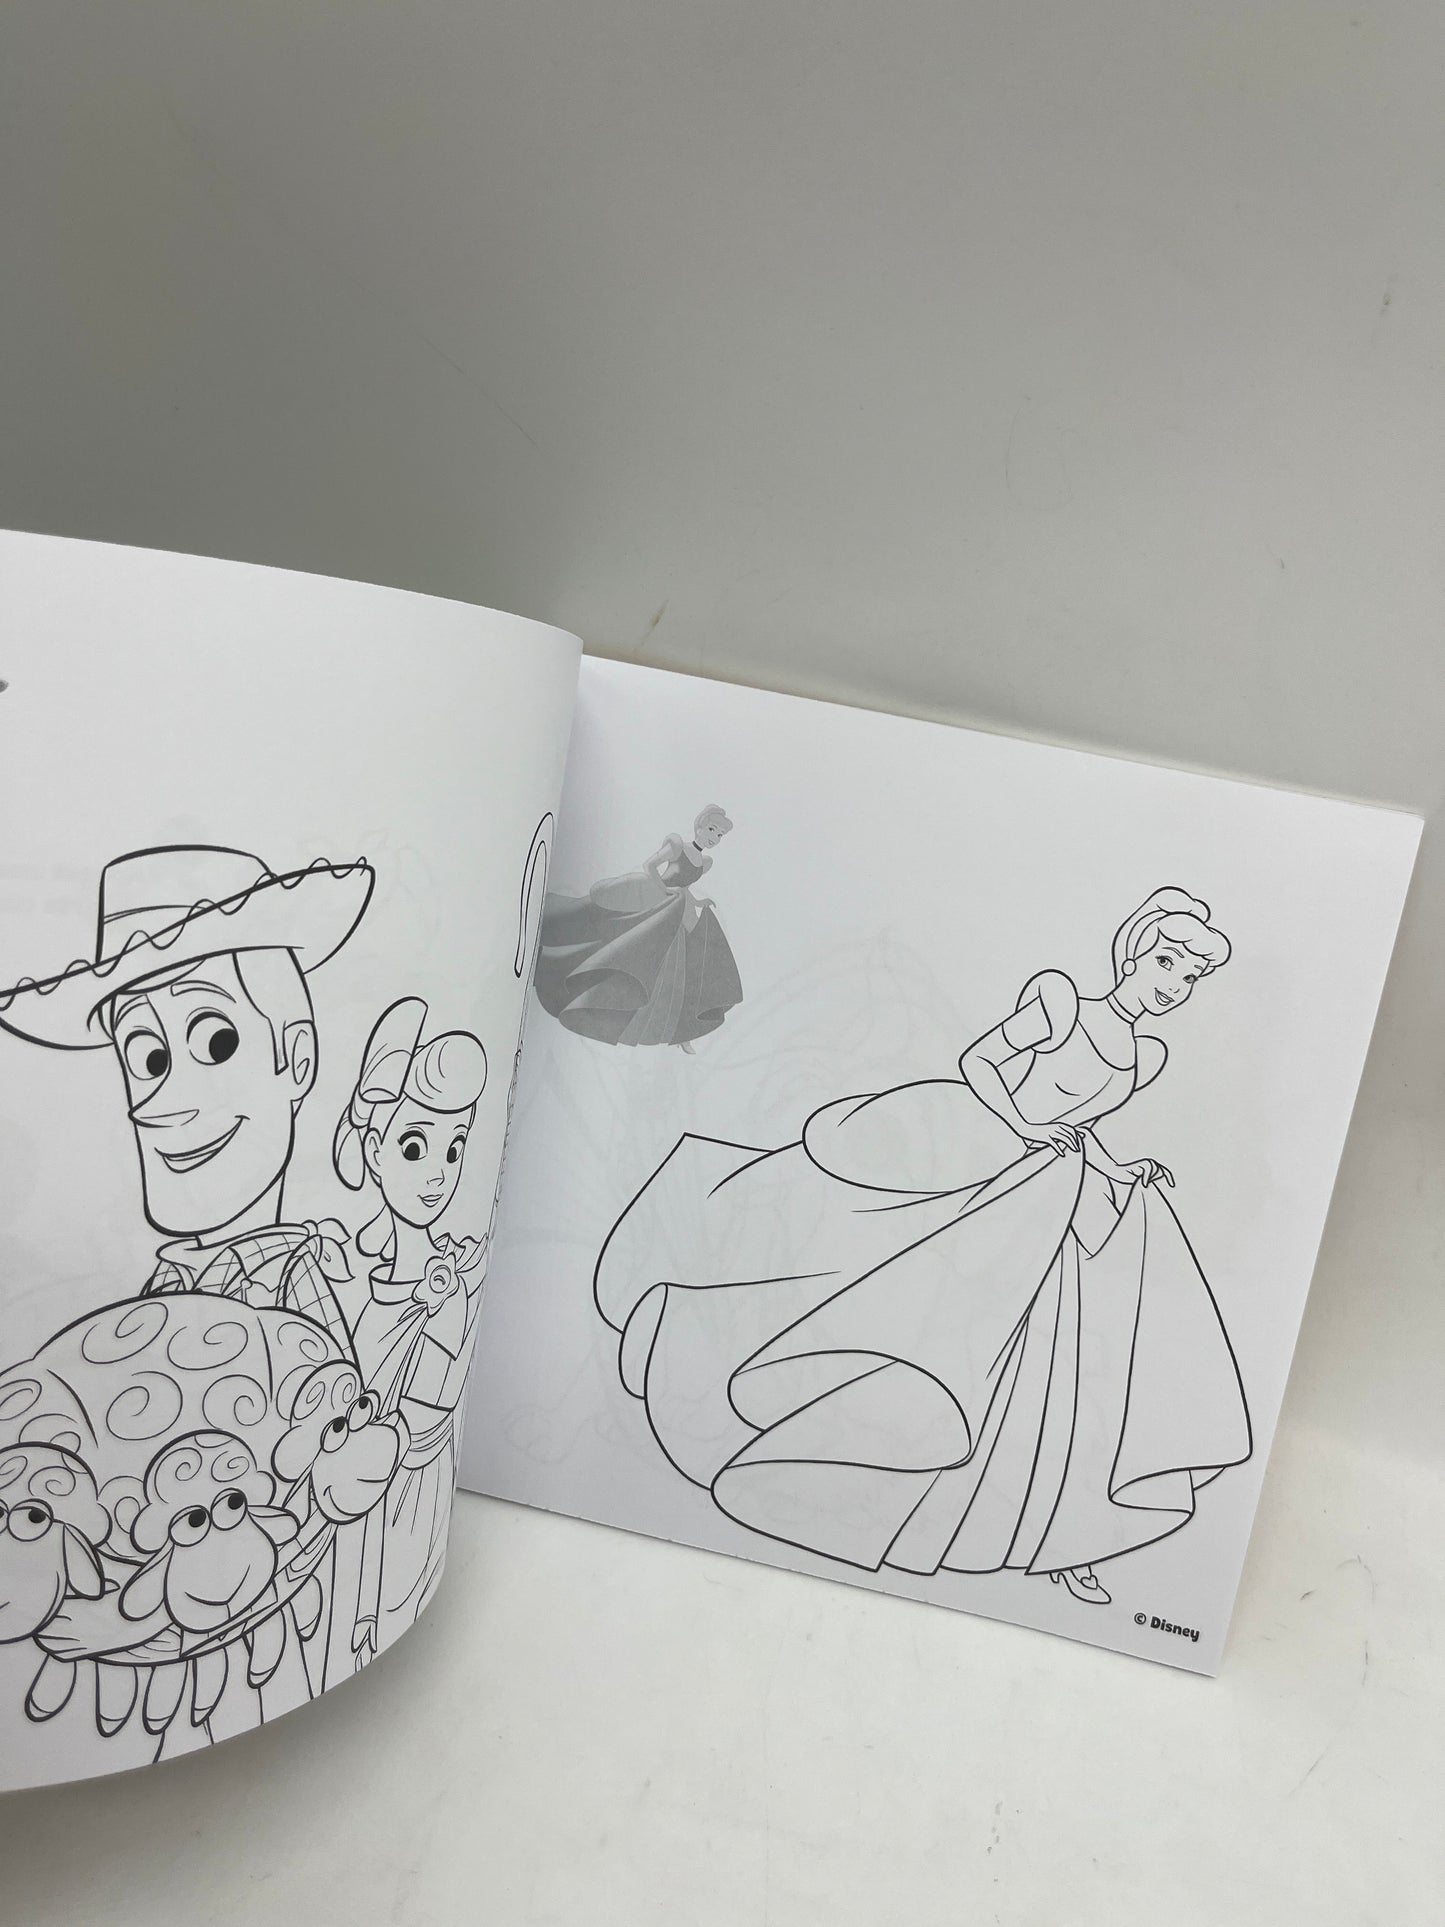 Livre d’activité Magazine Mon cahier de coloriage et stockers Disney Neuf